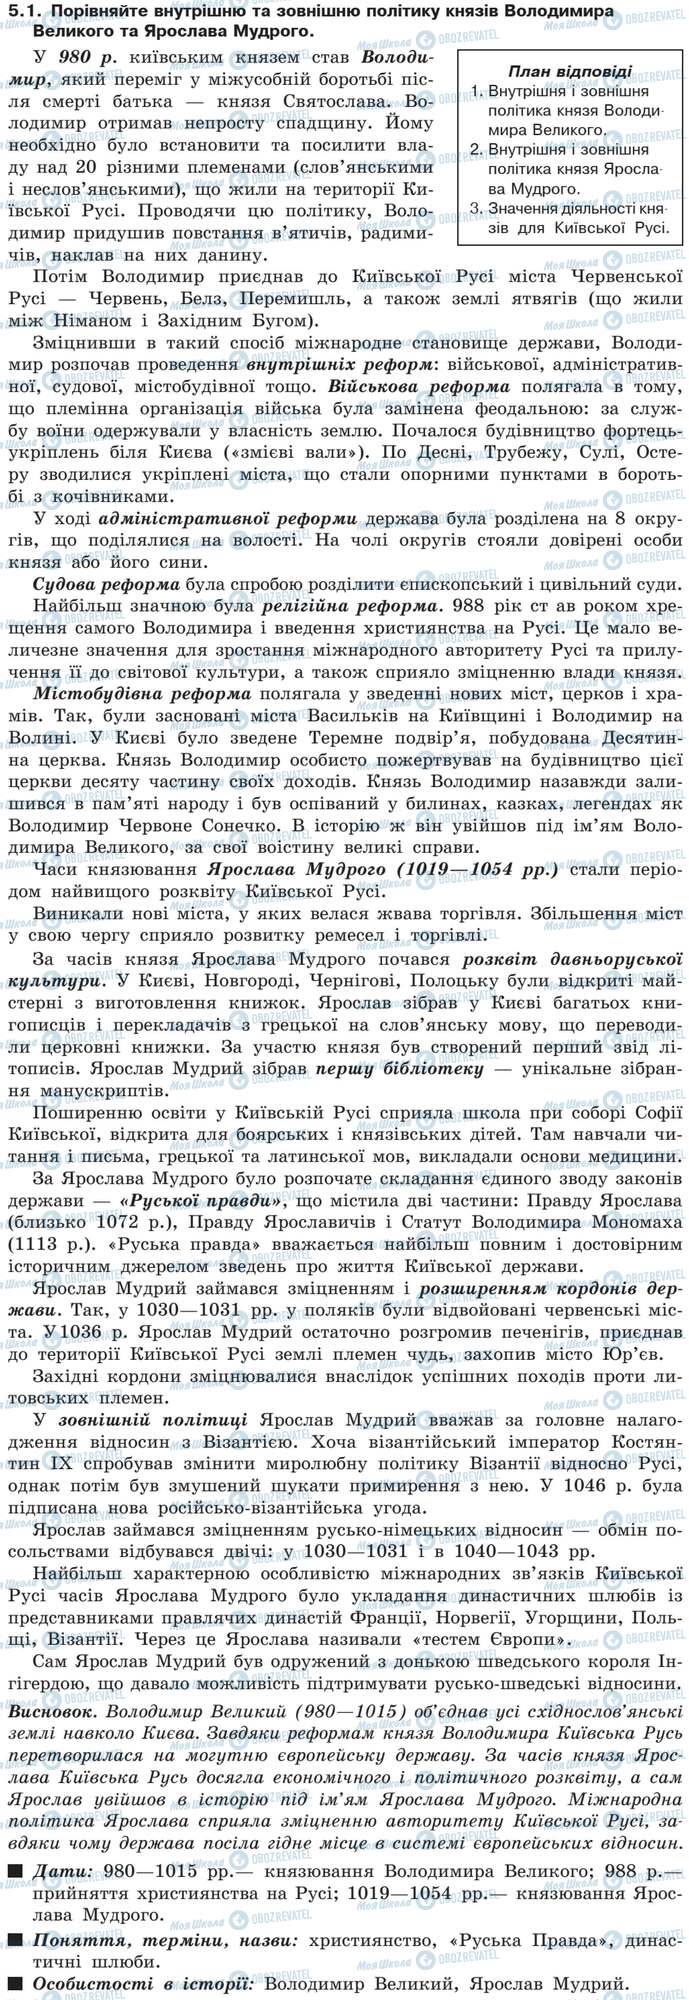 ДПА История Украины 9 класс страница 5.1